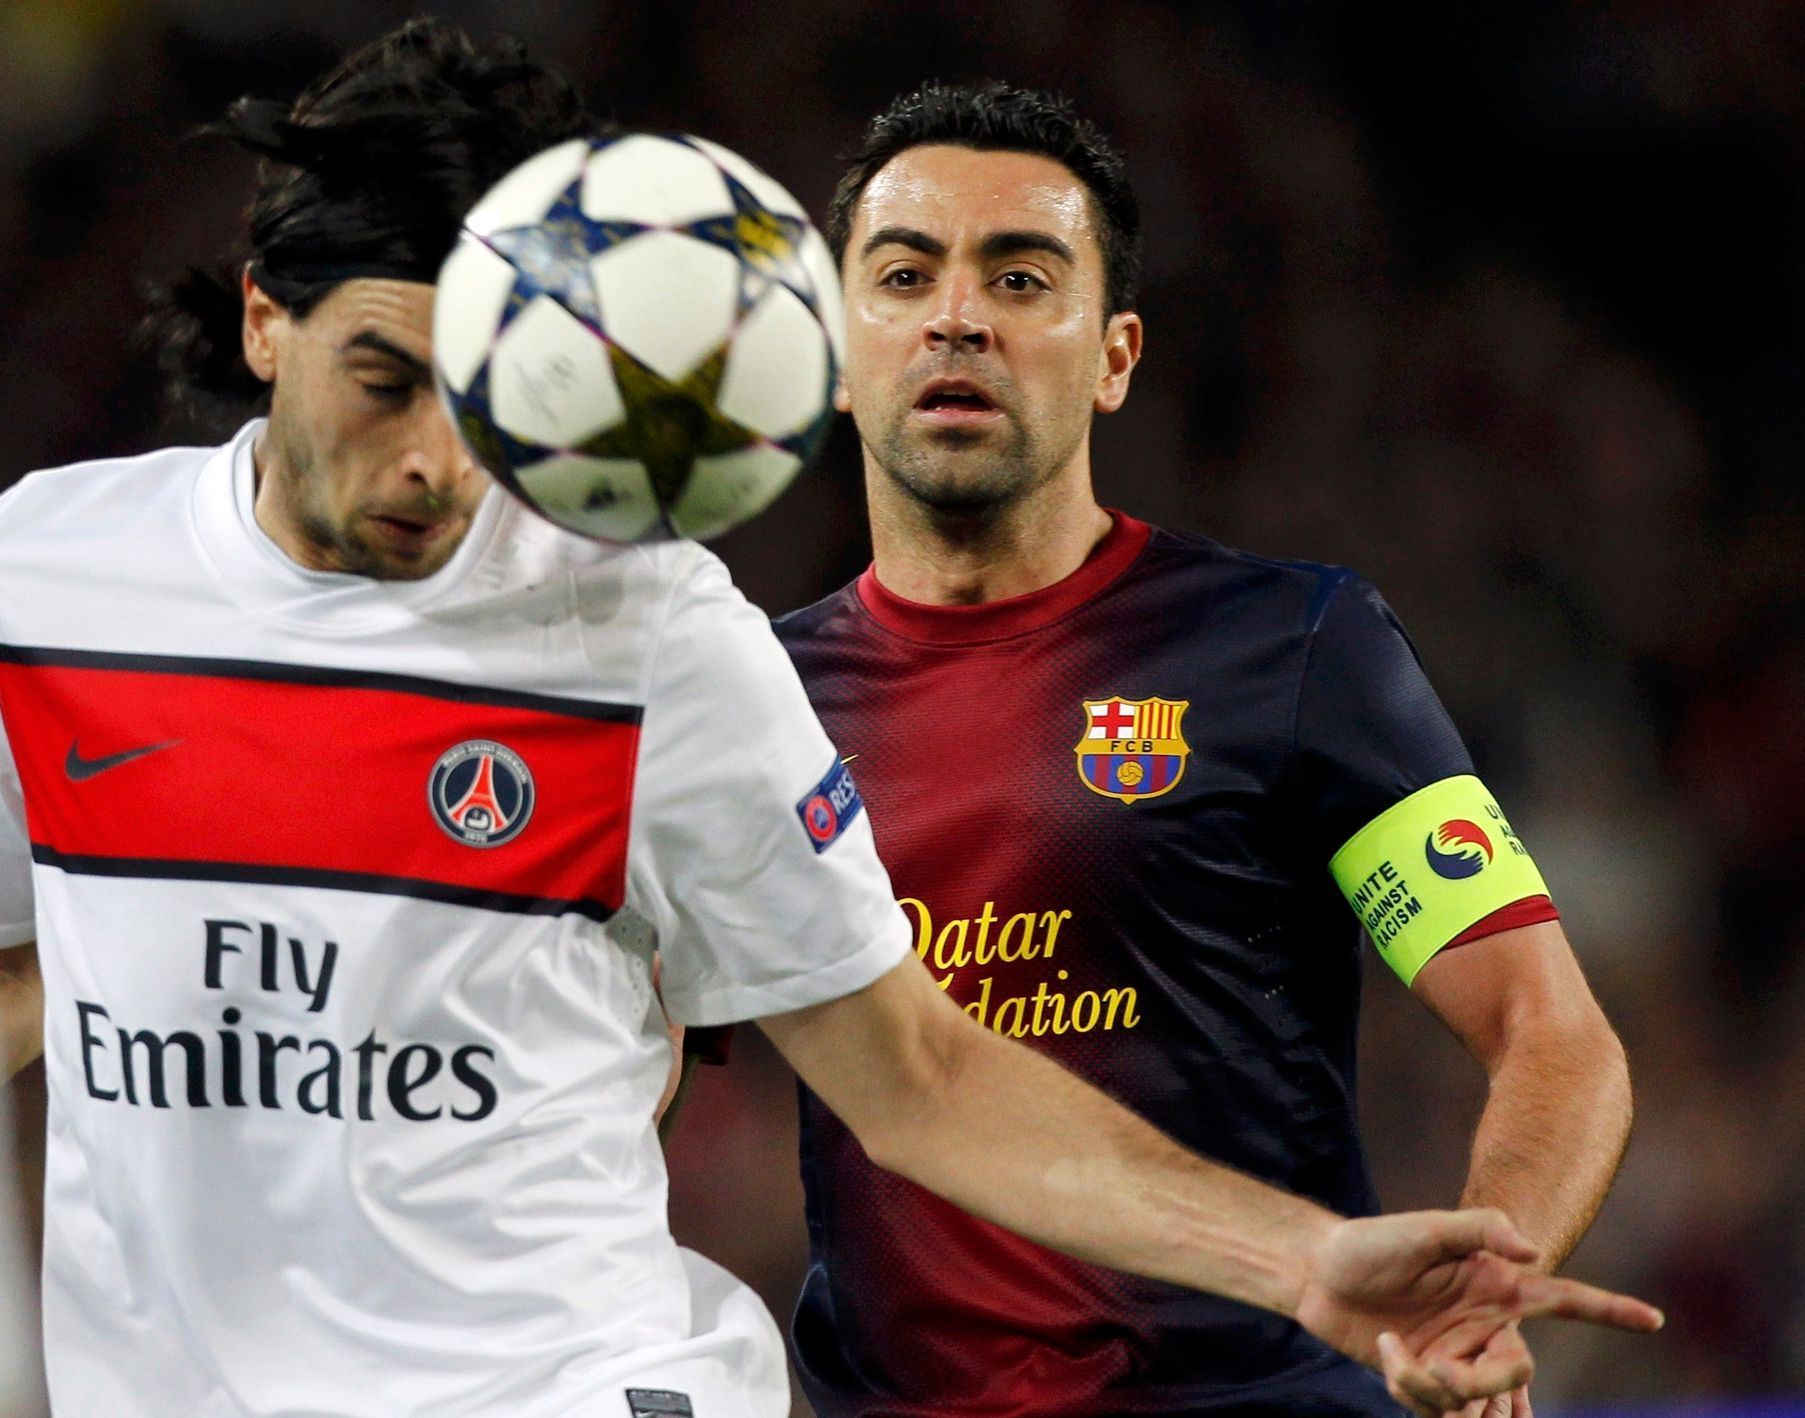 Fotbal: Barcelona - Paris St. Germain:  Xavi - Pastore